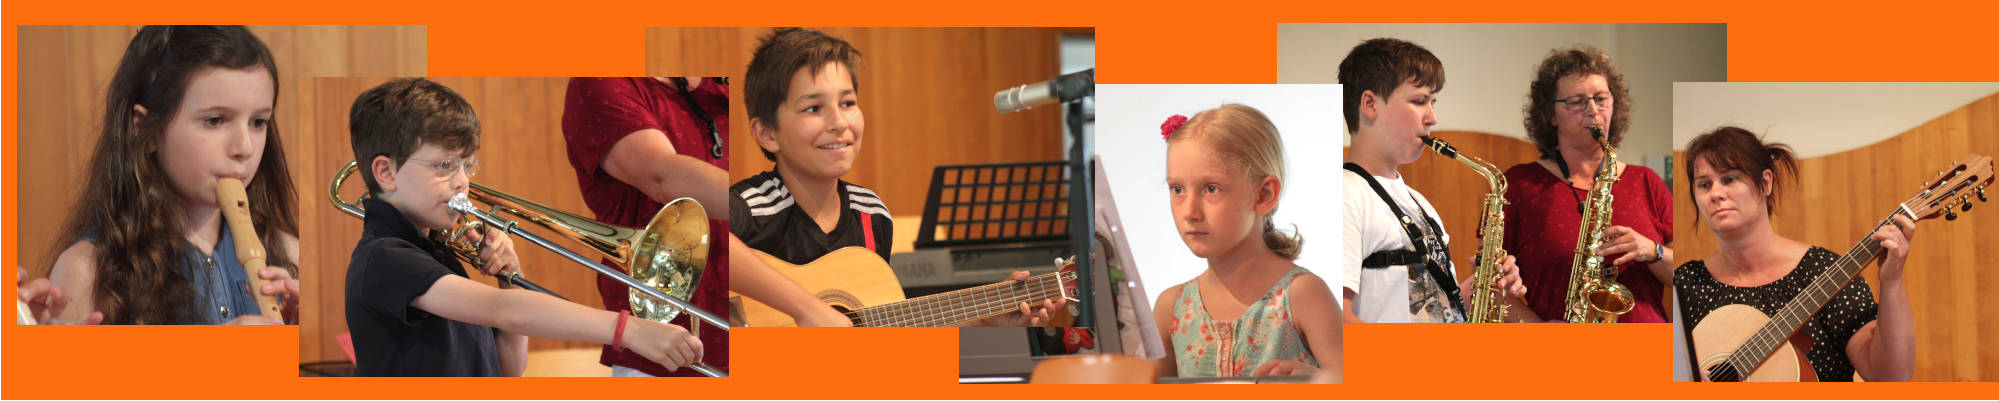 Musikschule Oberweser - Bilder - Collage vom Musikunterricht